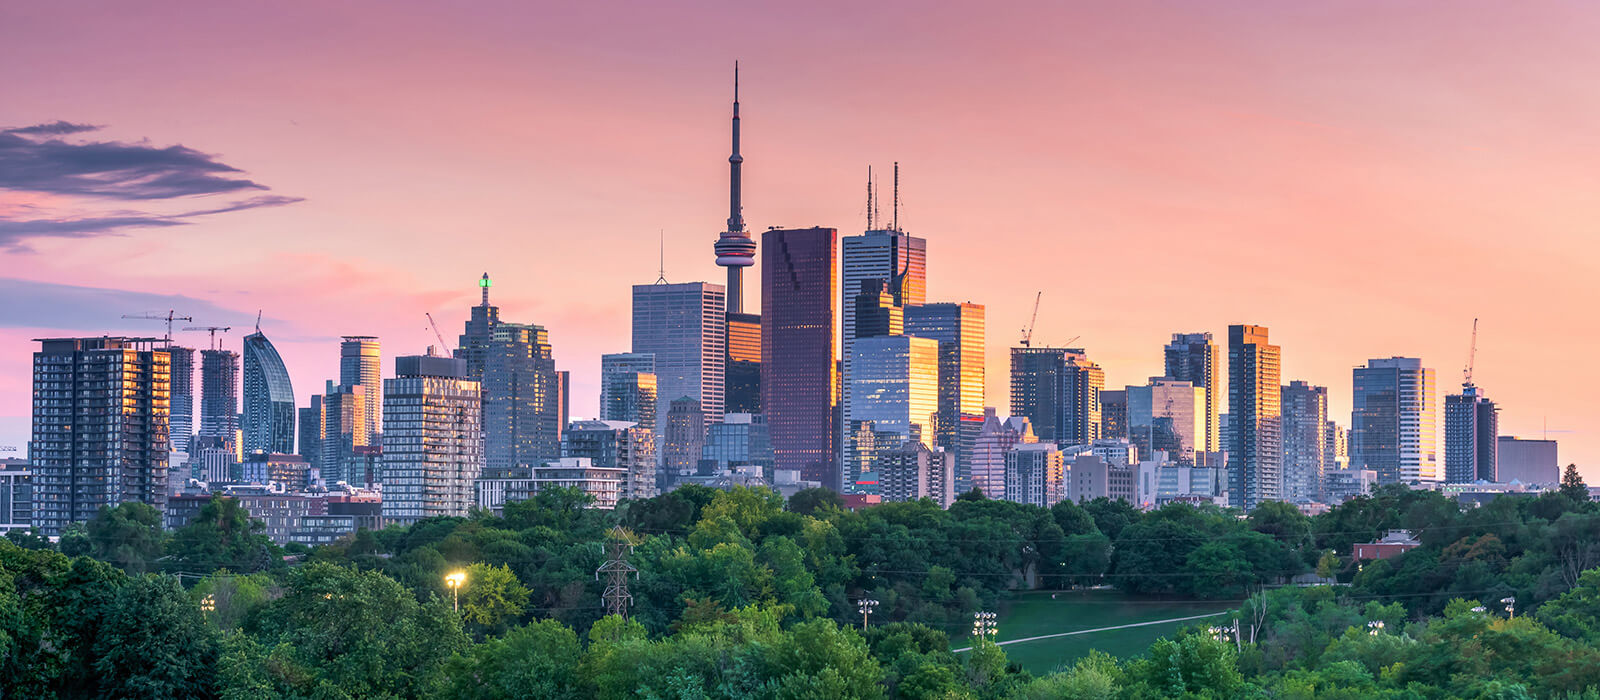 Slideshow Image - Toronto, Ontario Skyline